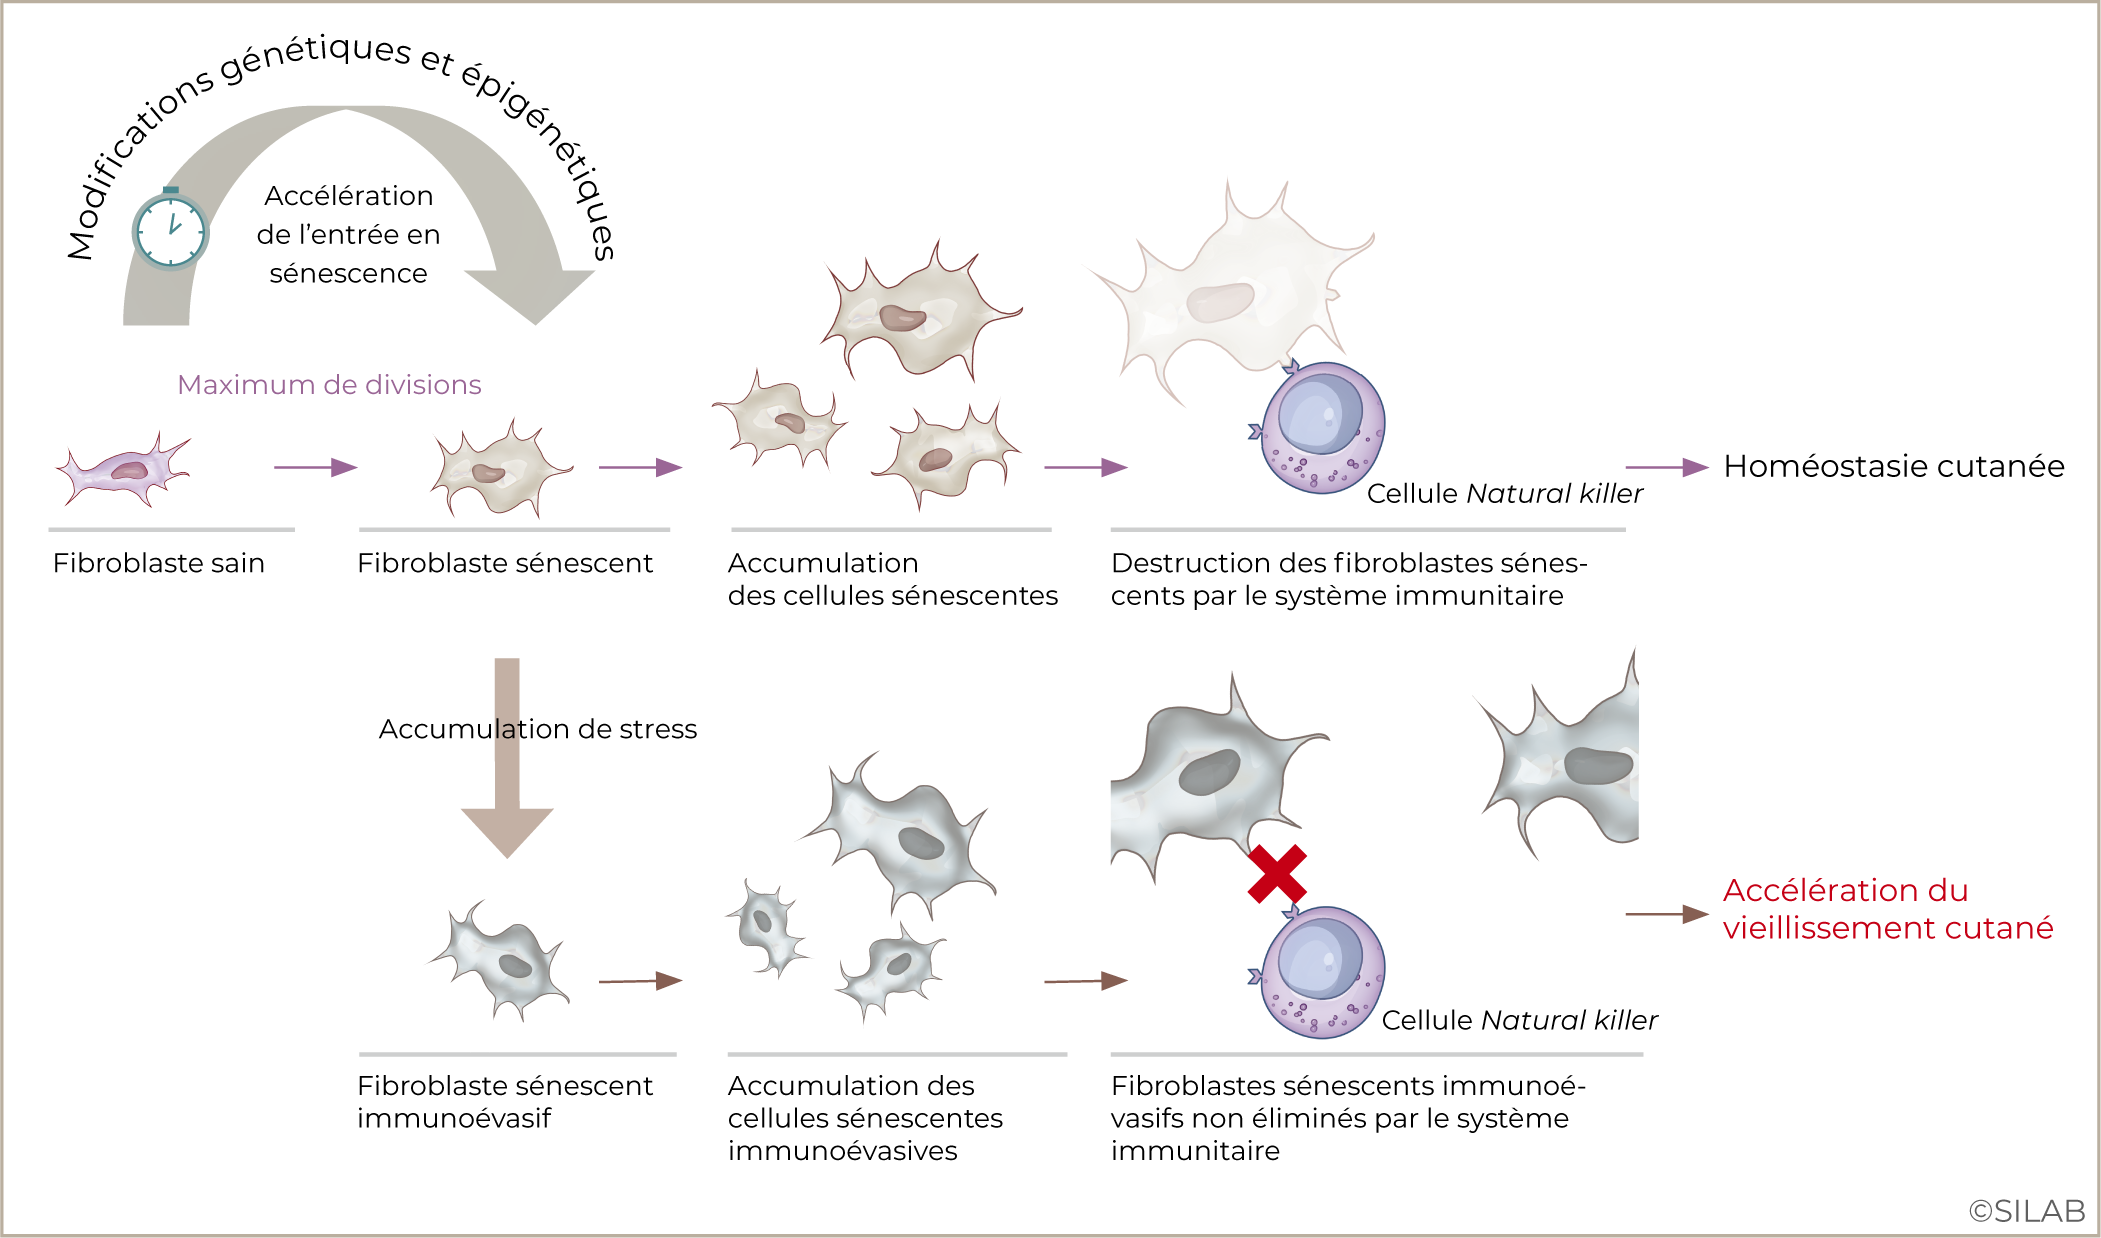 Implication des fibroblastes sénescents immunoévasifs dans l’accélération du vieillissement de la peau